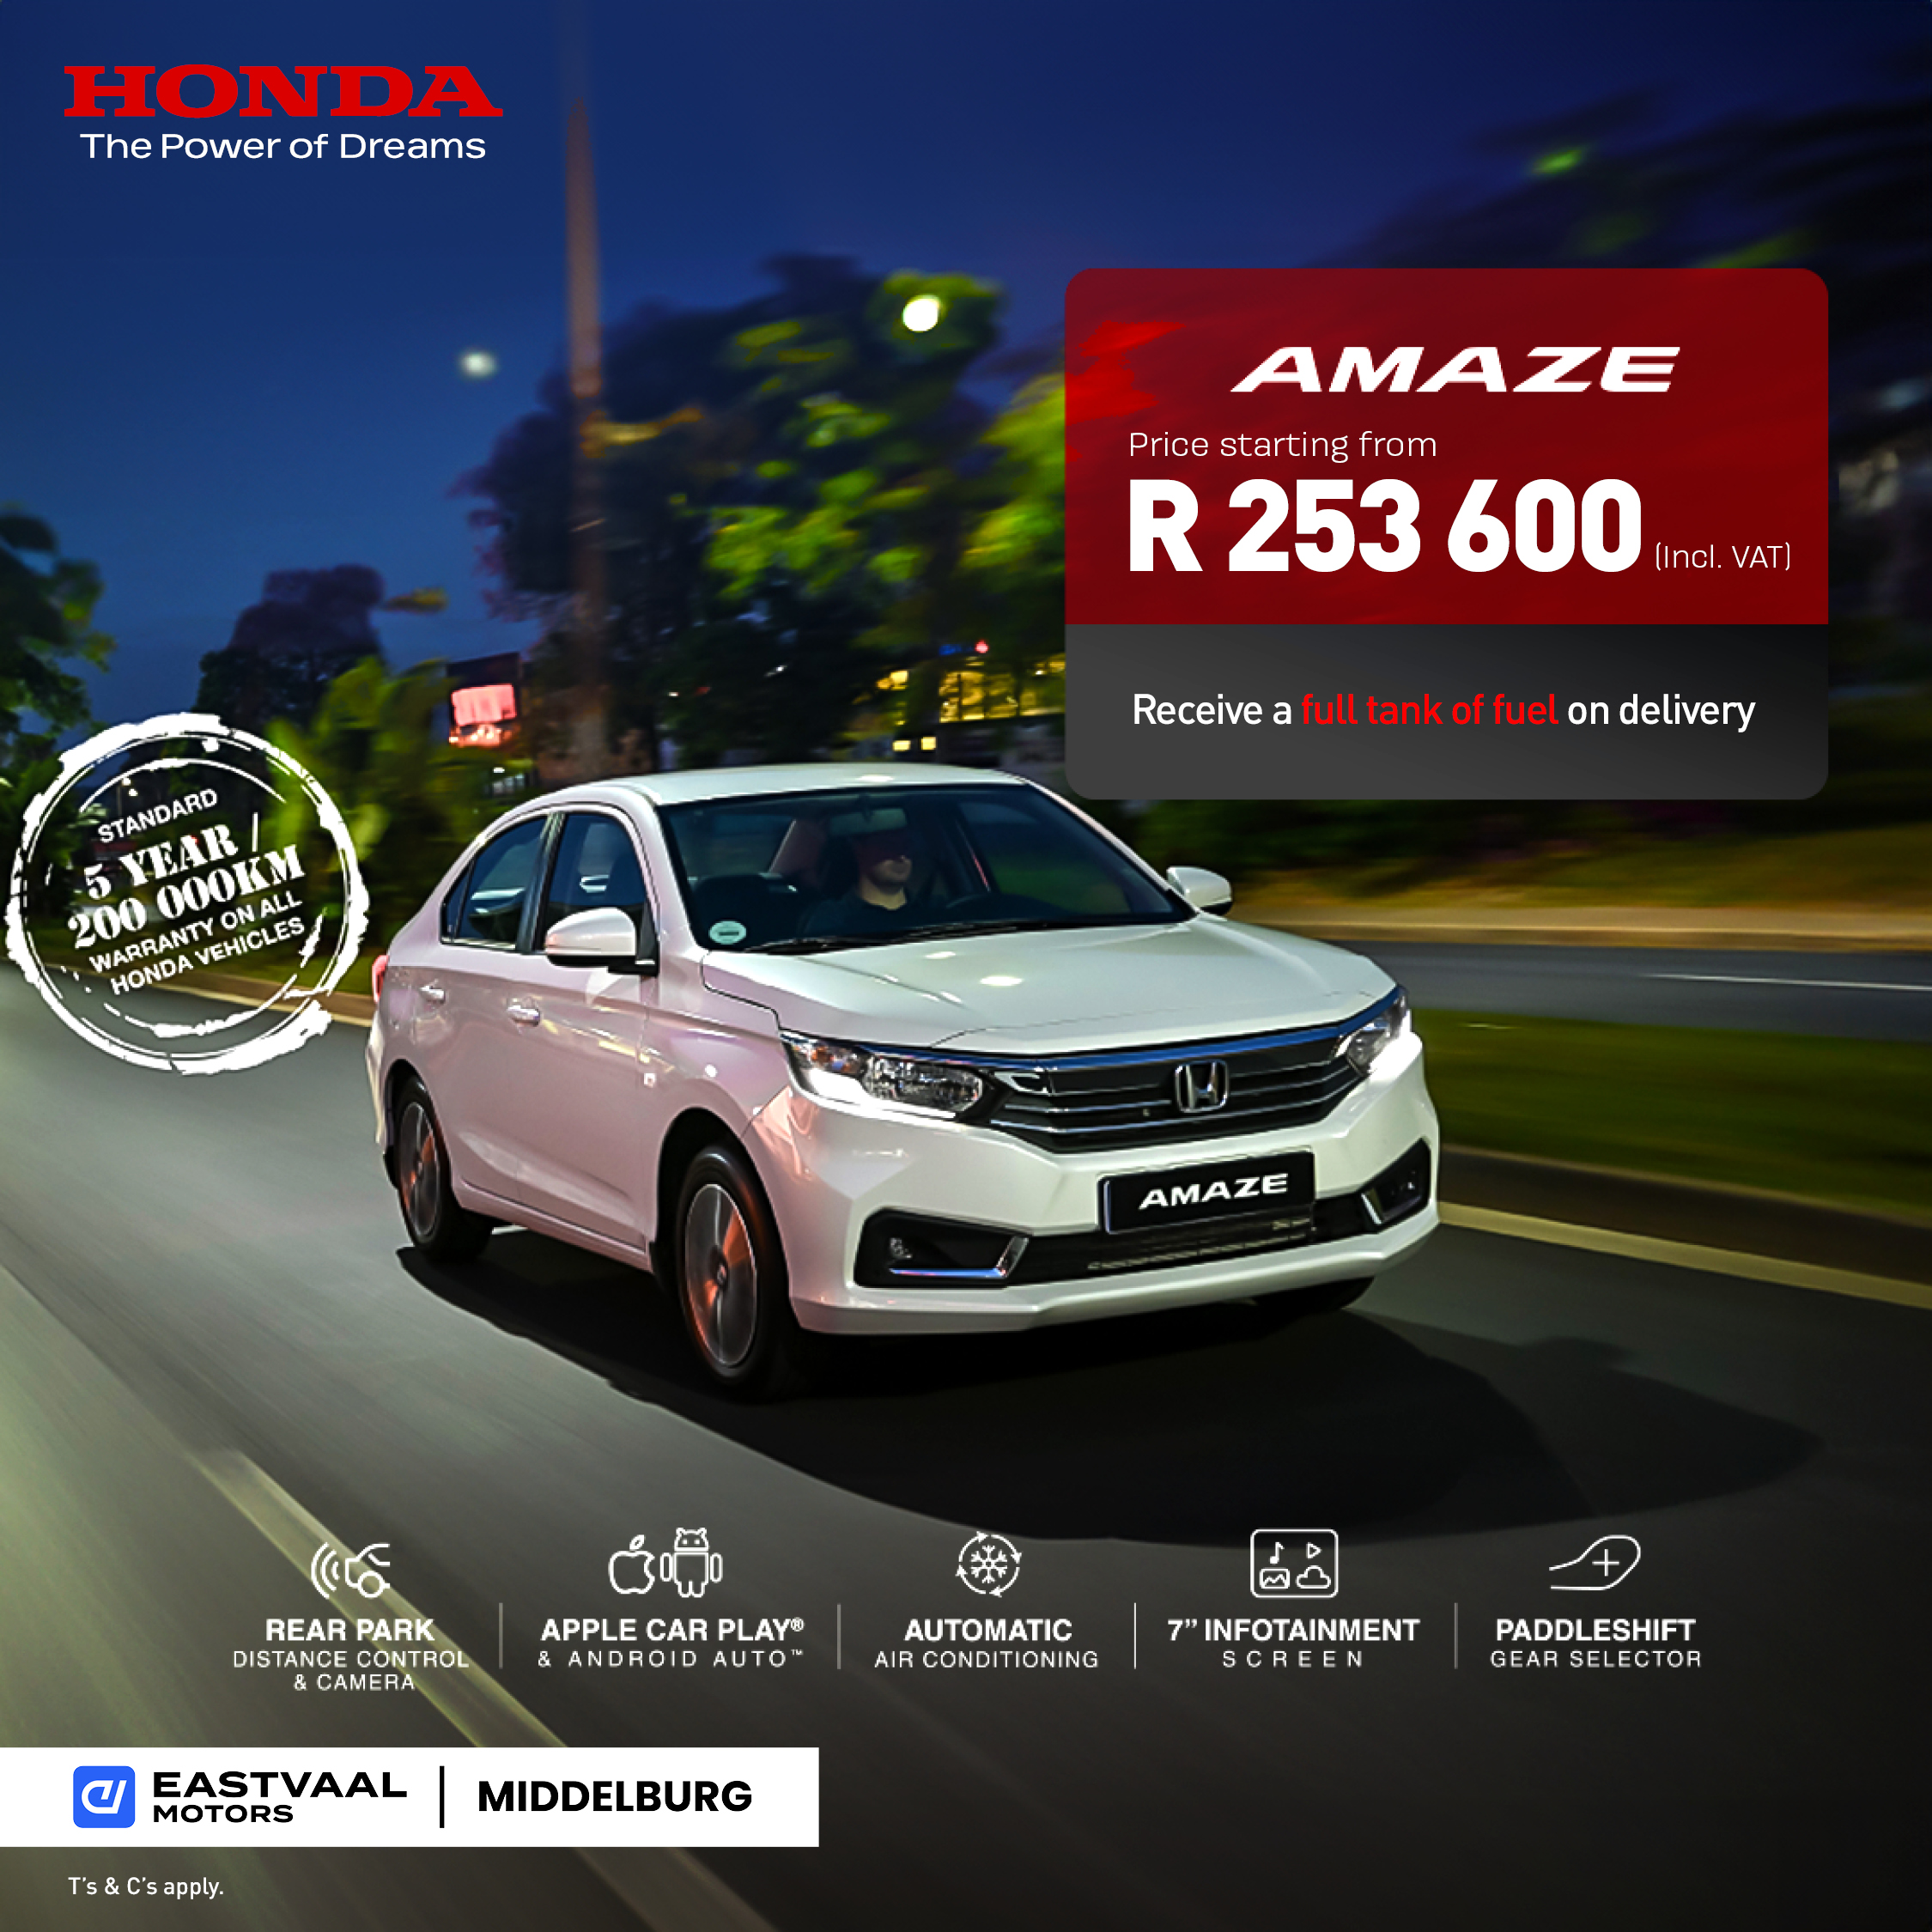 Honda Amaze image from 